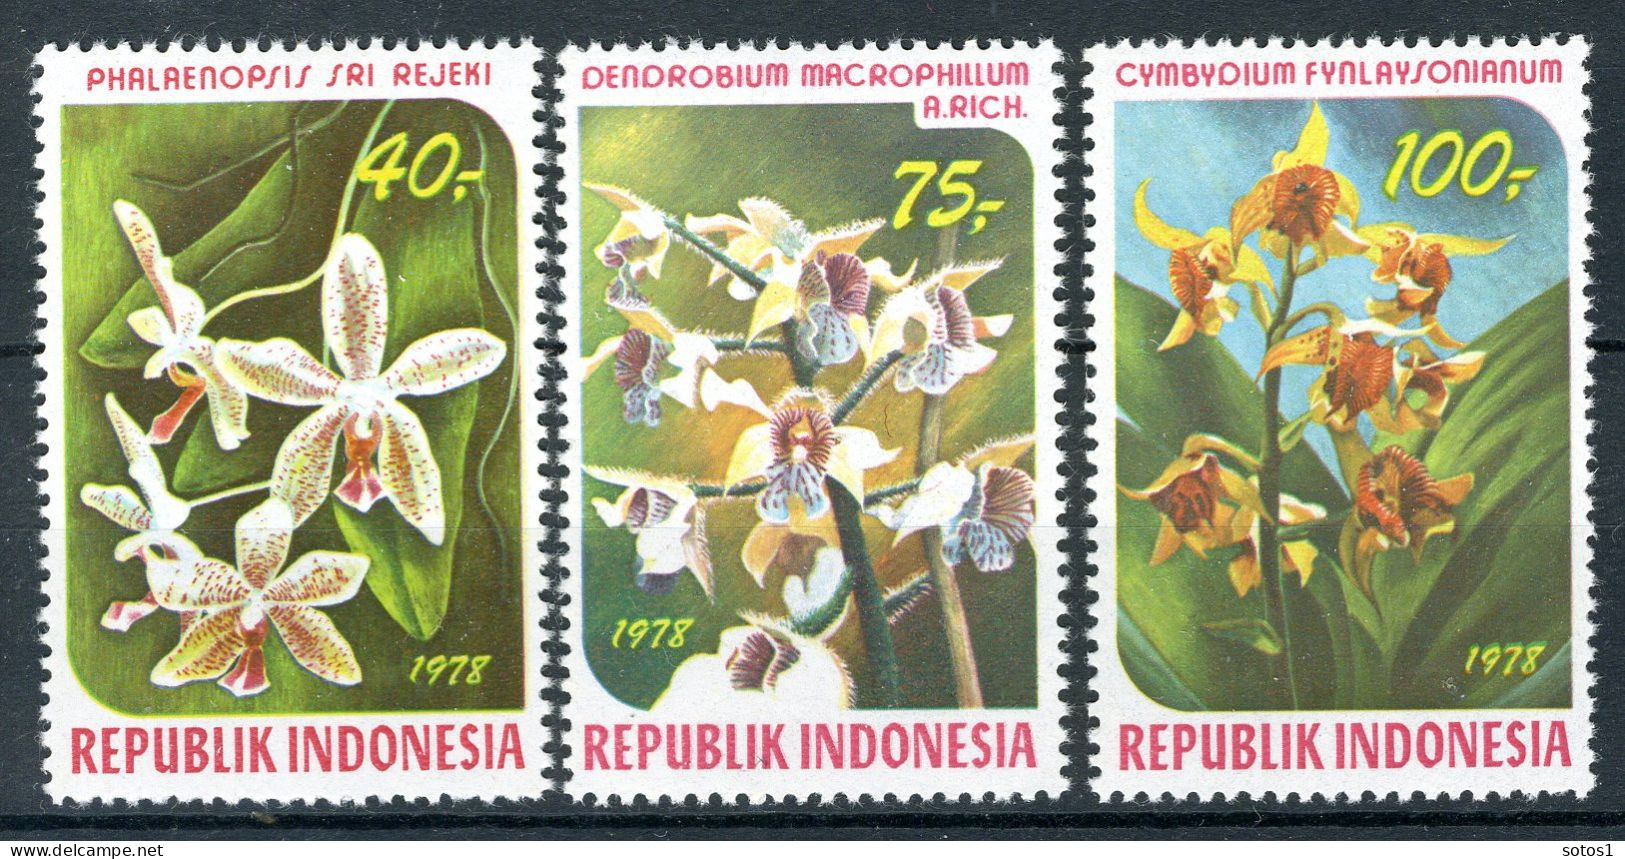 INDONESIE: ZB 937/939 MNH 1978 Indonesische Orchideën - Indonésie